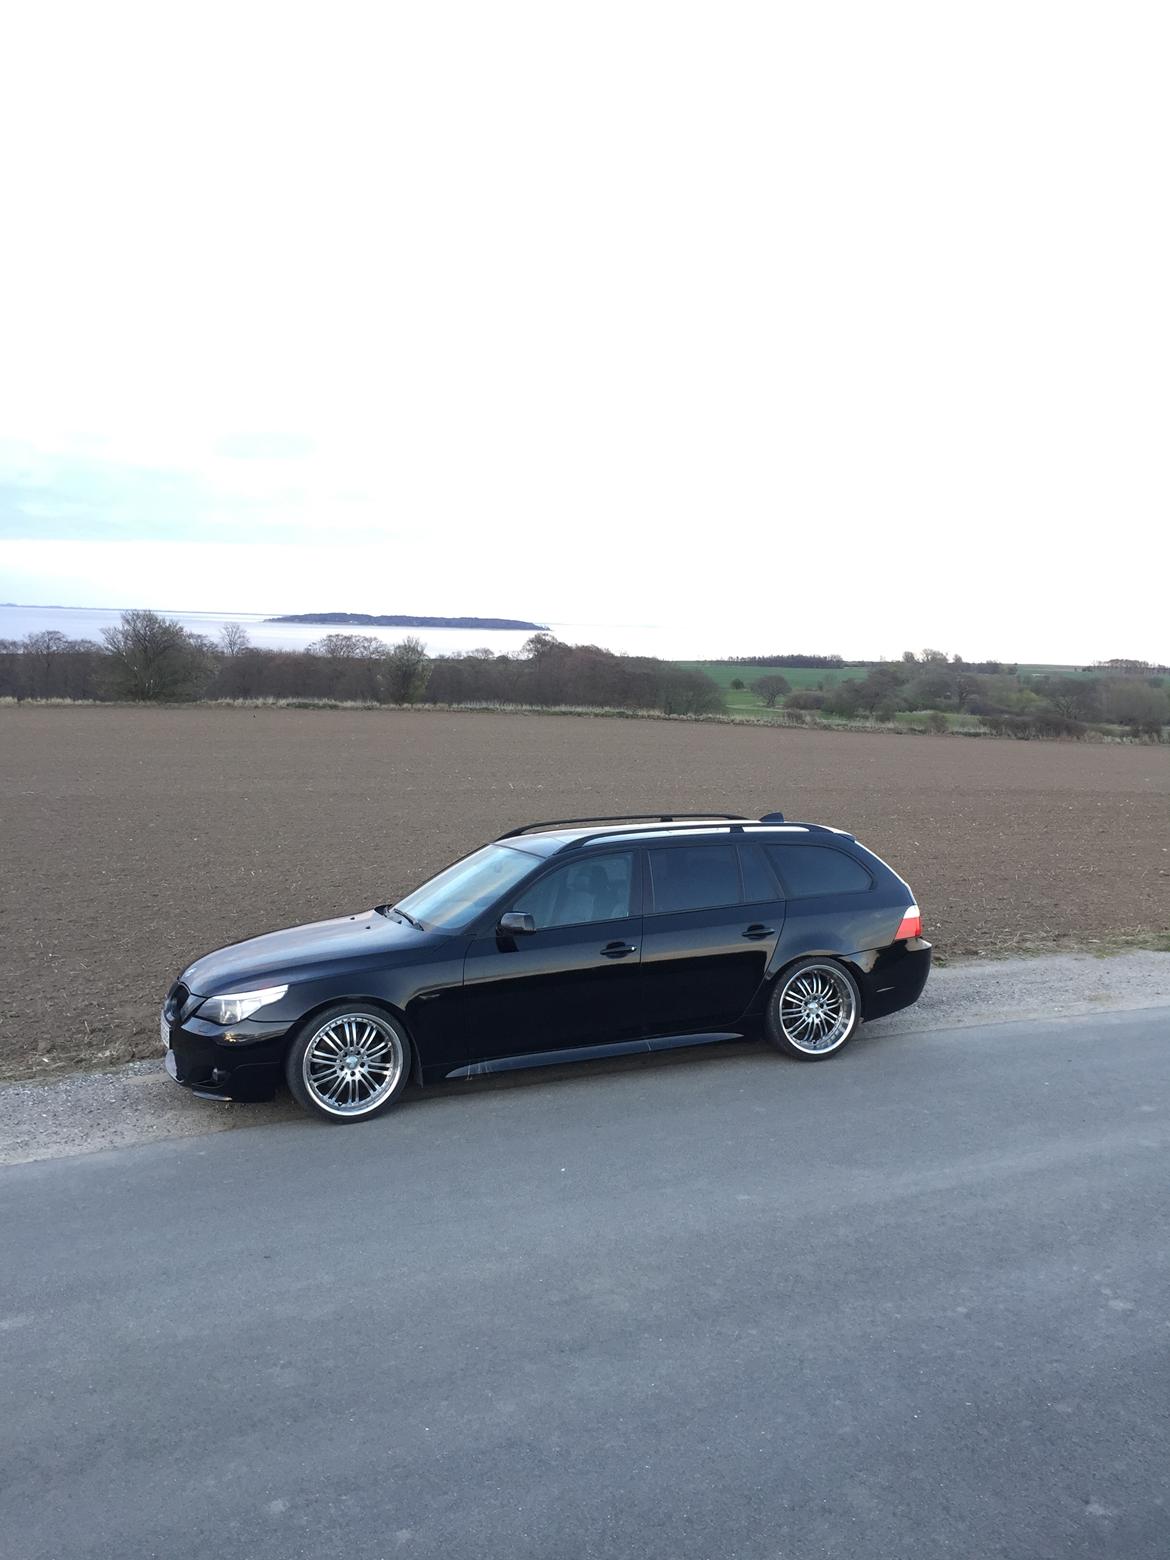 BMW 535d e61 billede 2